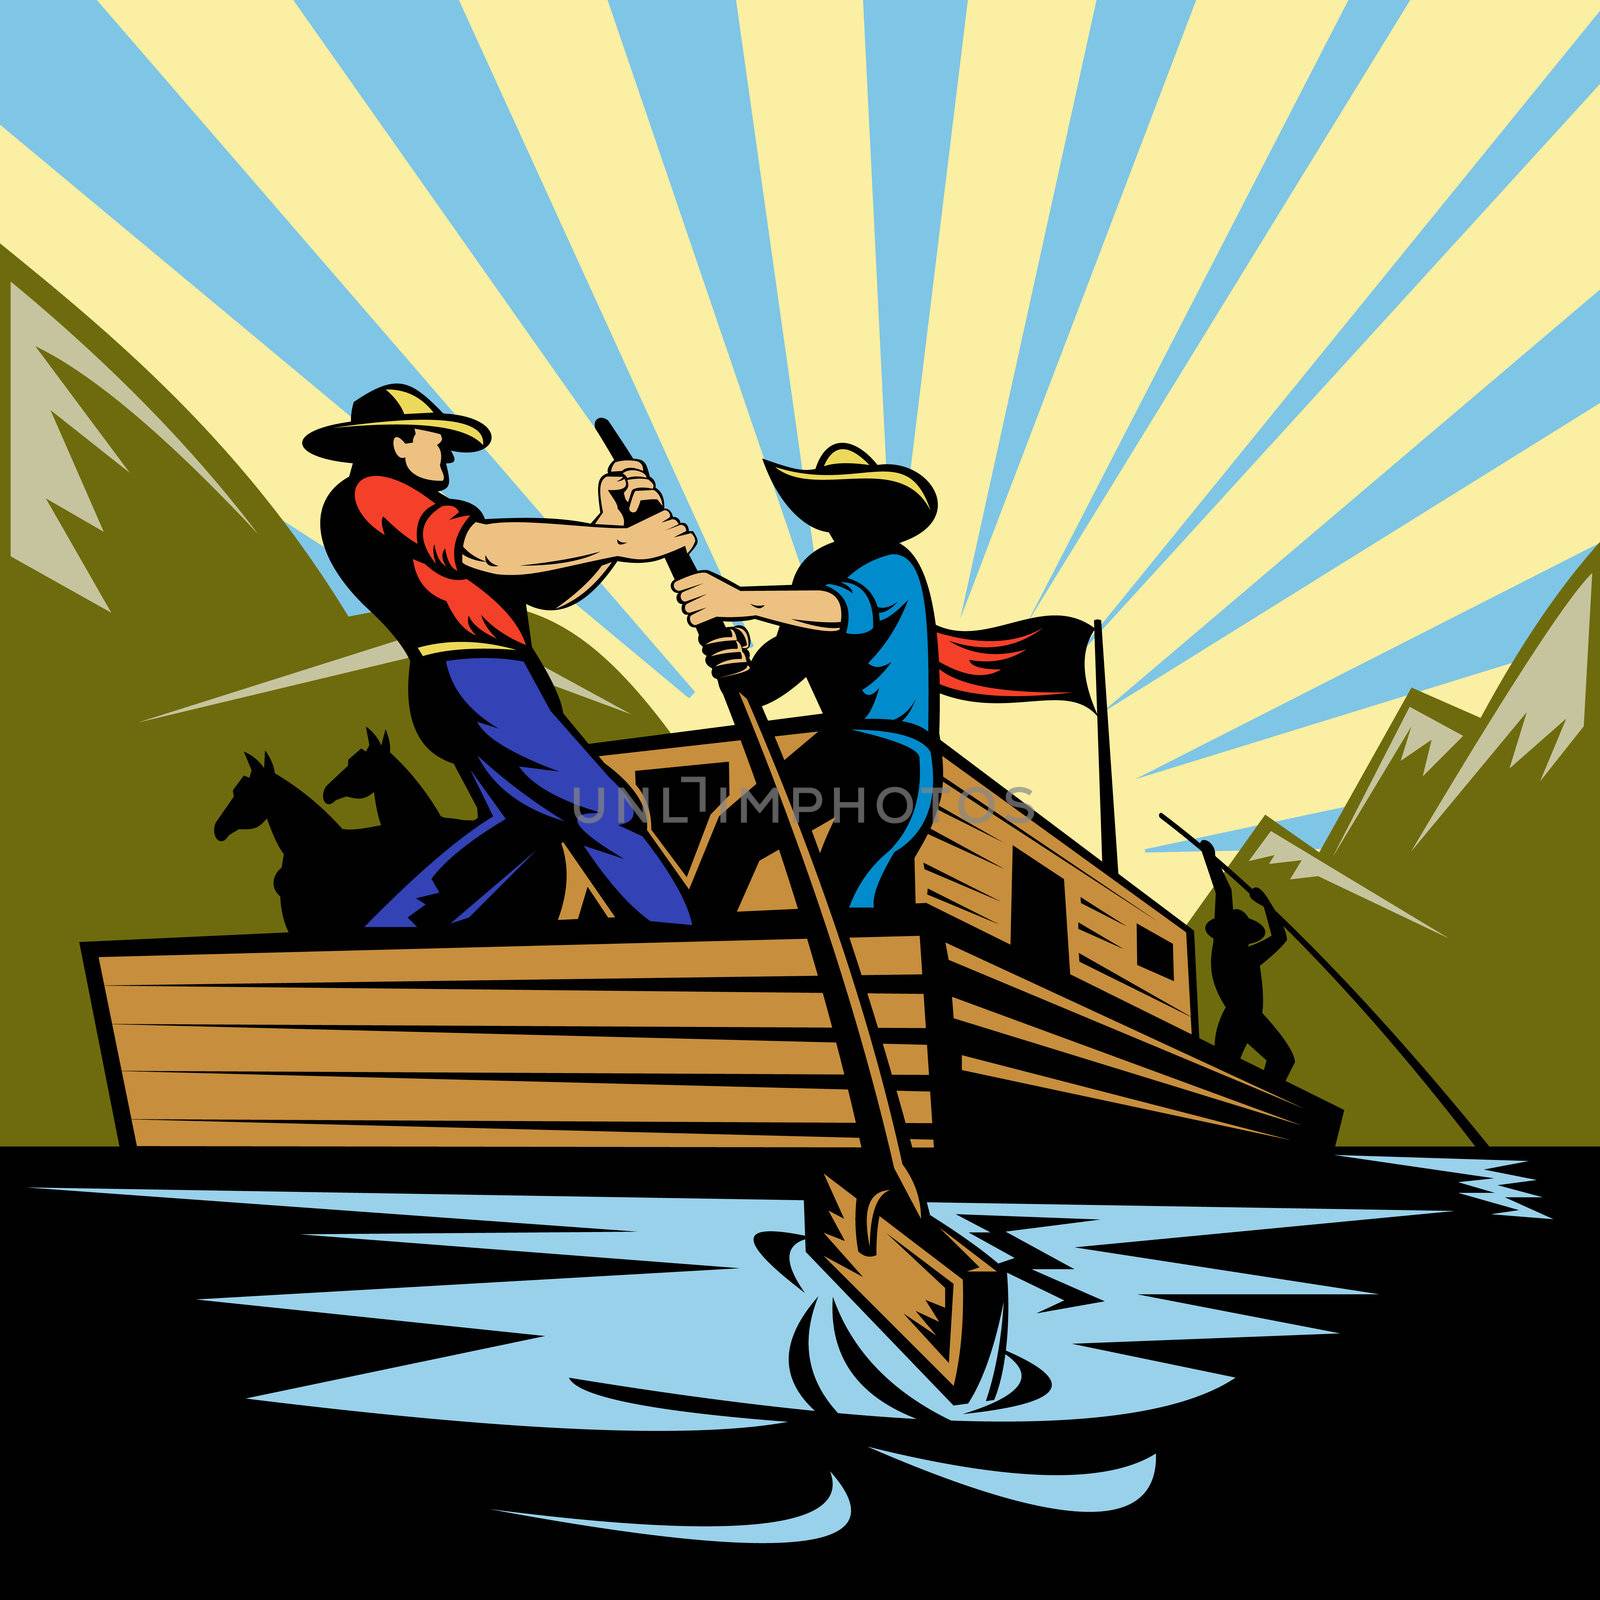 Illustration of a Cowboy man steering flatboat along river